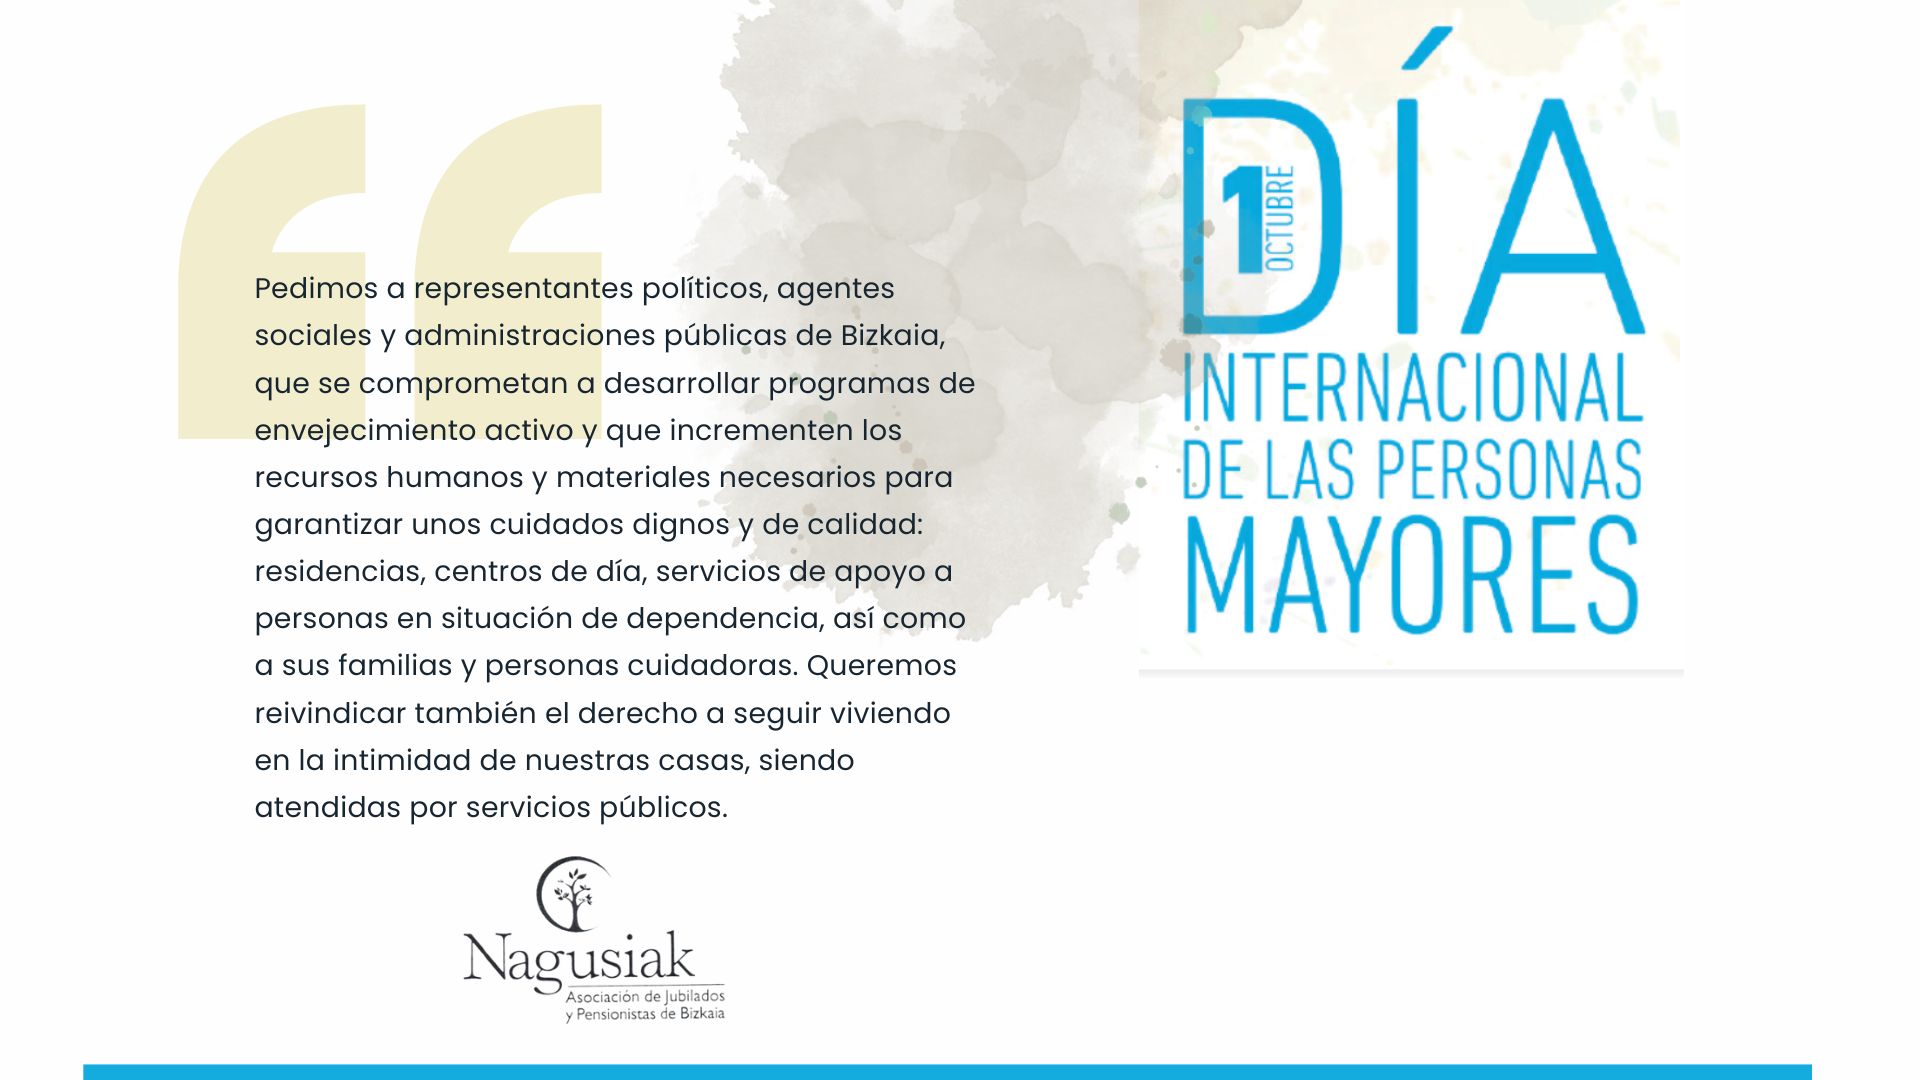 Nagusiak-Bizkaia conmemora el Día de las Personas Mayores